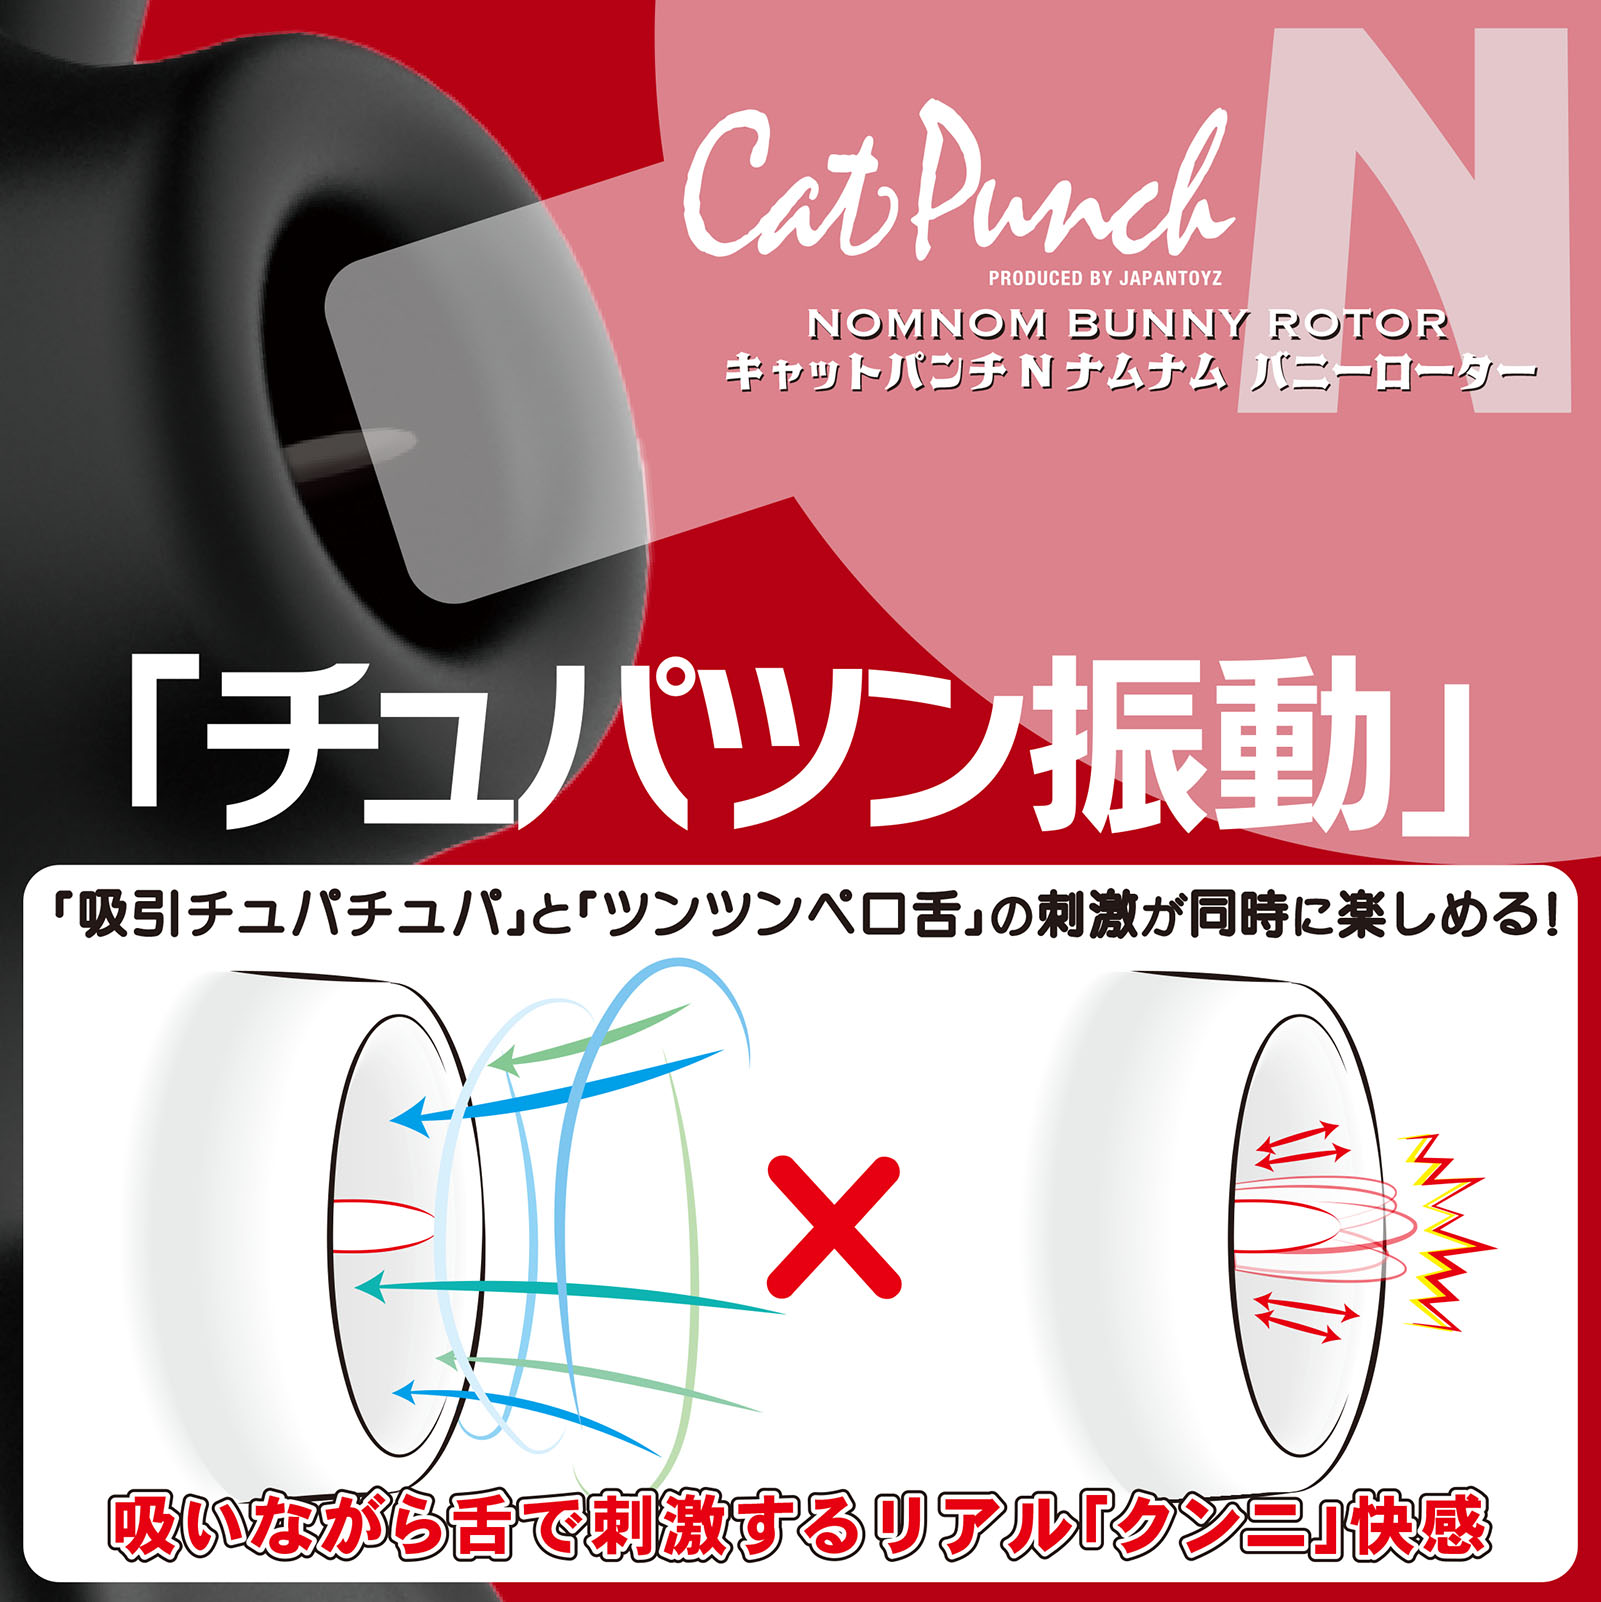 Cat Punch Lbgp`̃C[W02